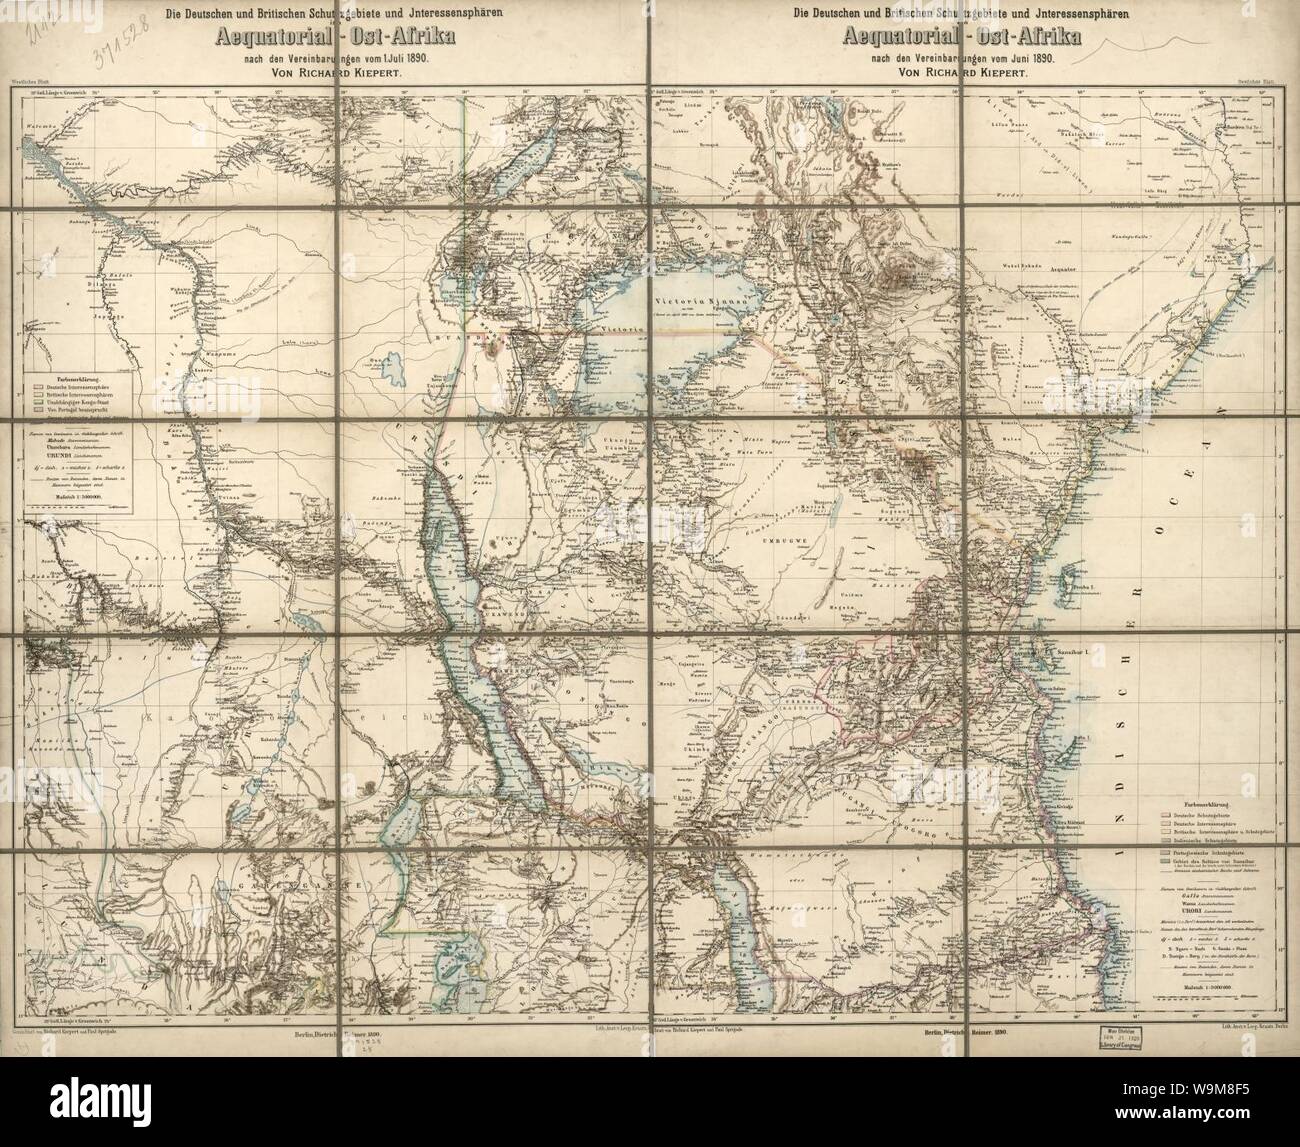 Die Deutschen und Britischen Schutzgebiete und Interessenspharen in Aequatorial-Ost-Afrika - nach den Vereinbarungen vom Juni 1890 Stock Photo